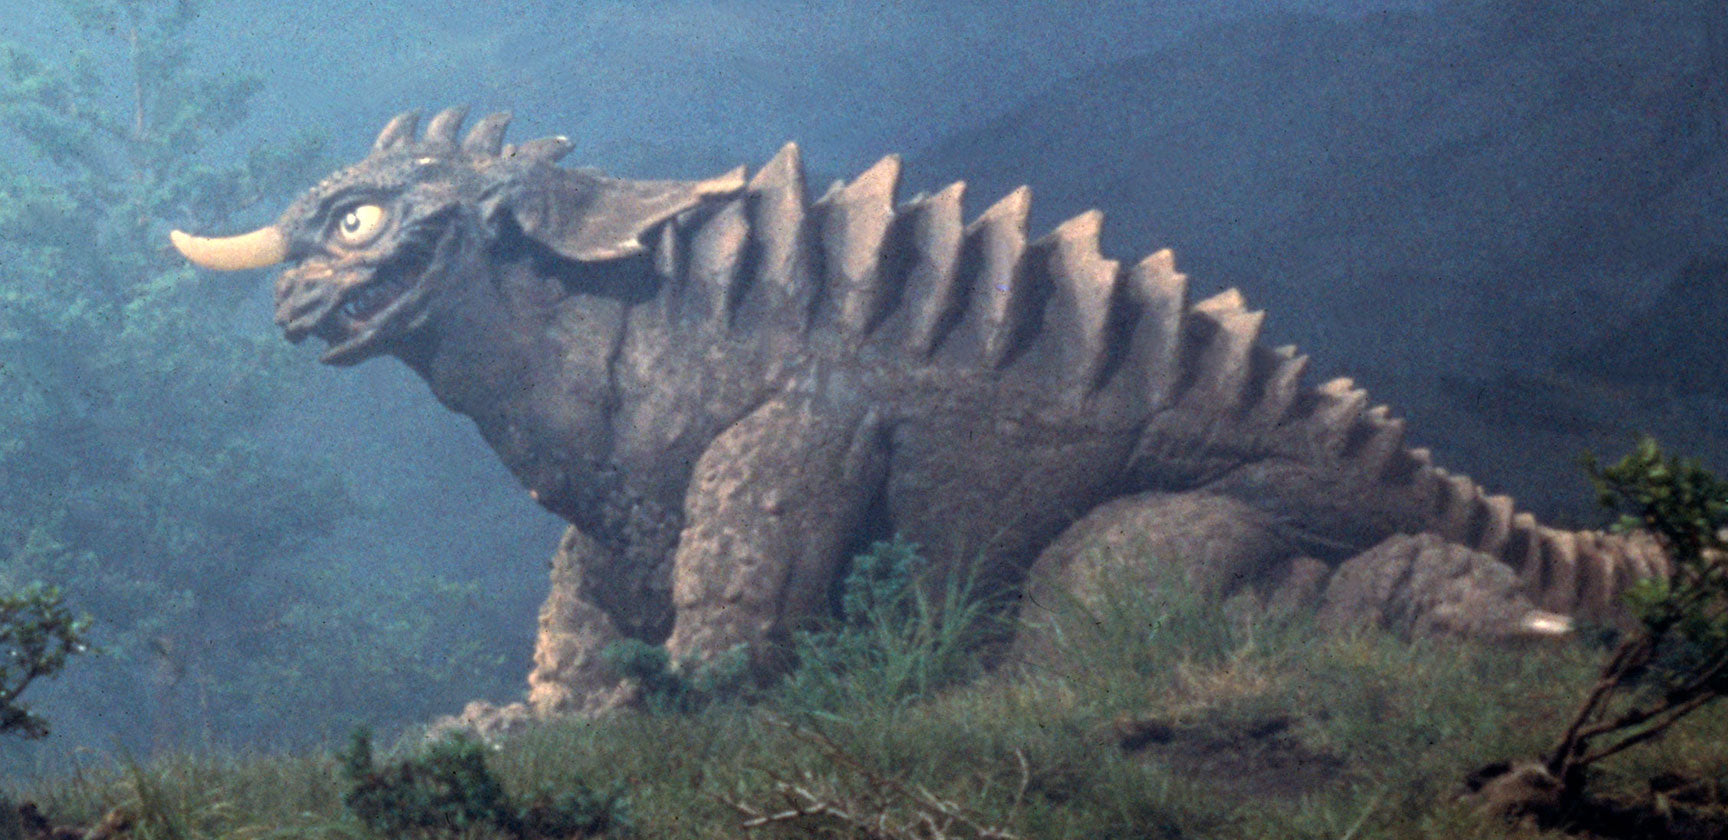 BARAGON – Godzilla